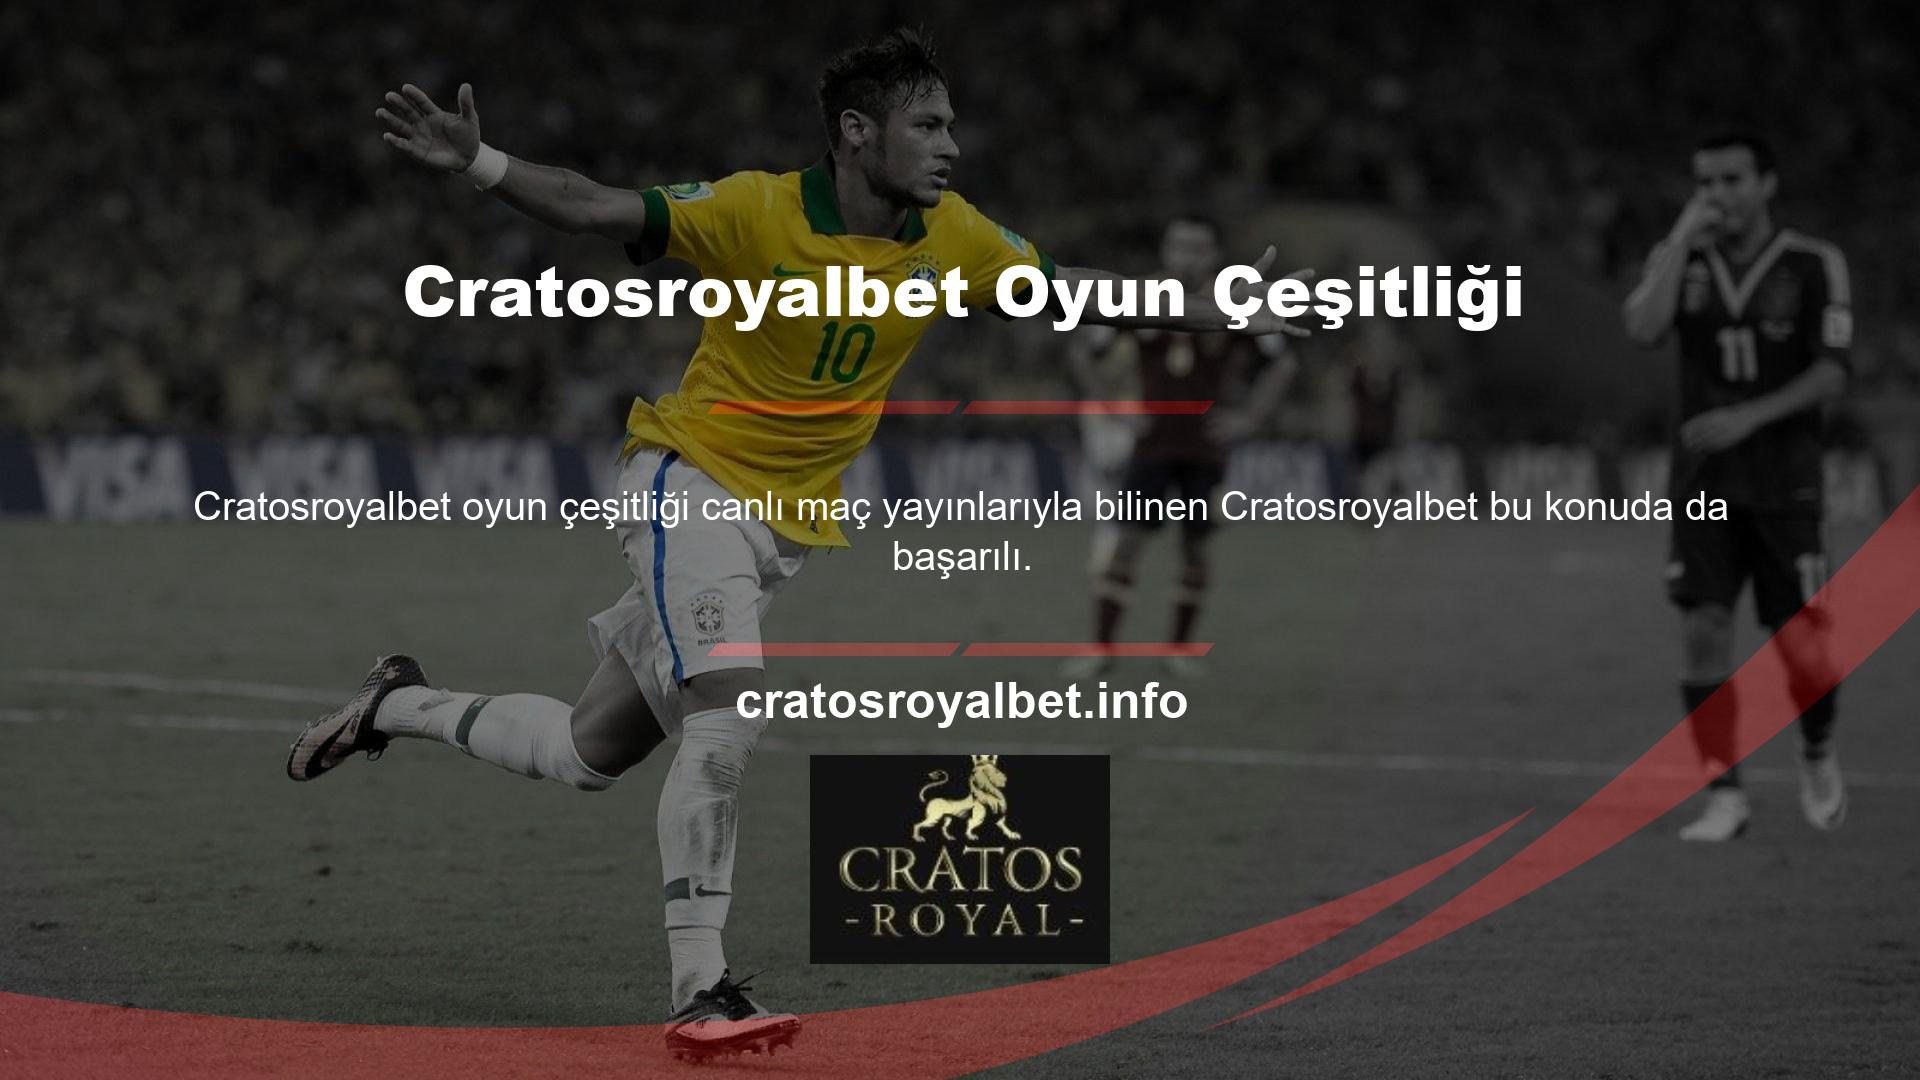 Cratosroyalbet sadece spor bahisleri değil, birçok kategoride hizmet sunmaktadır